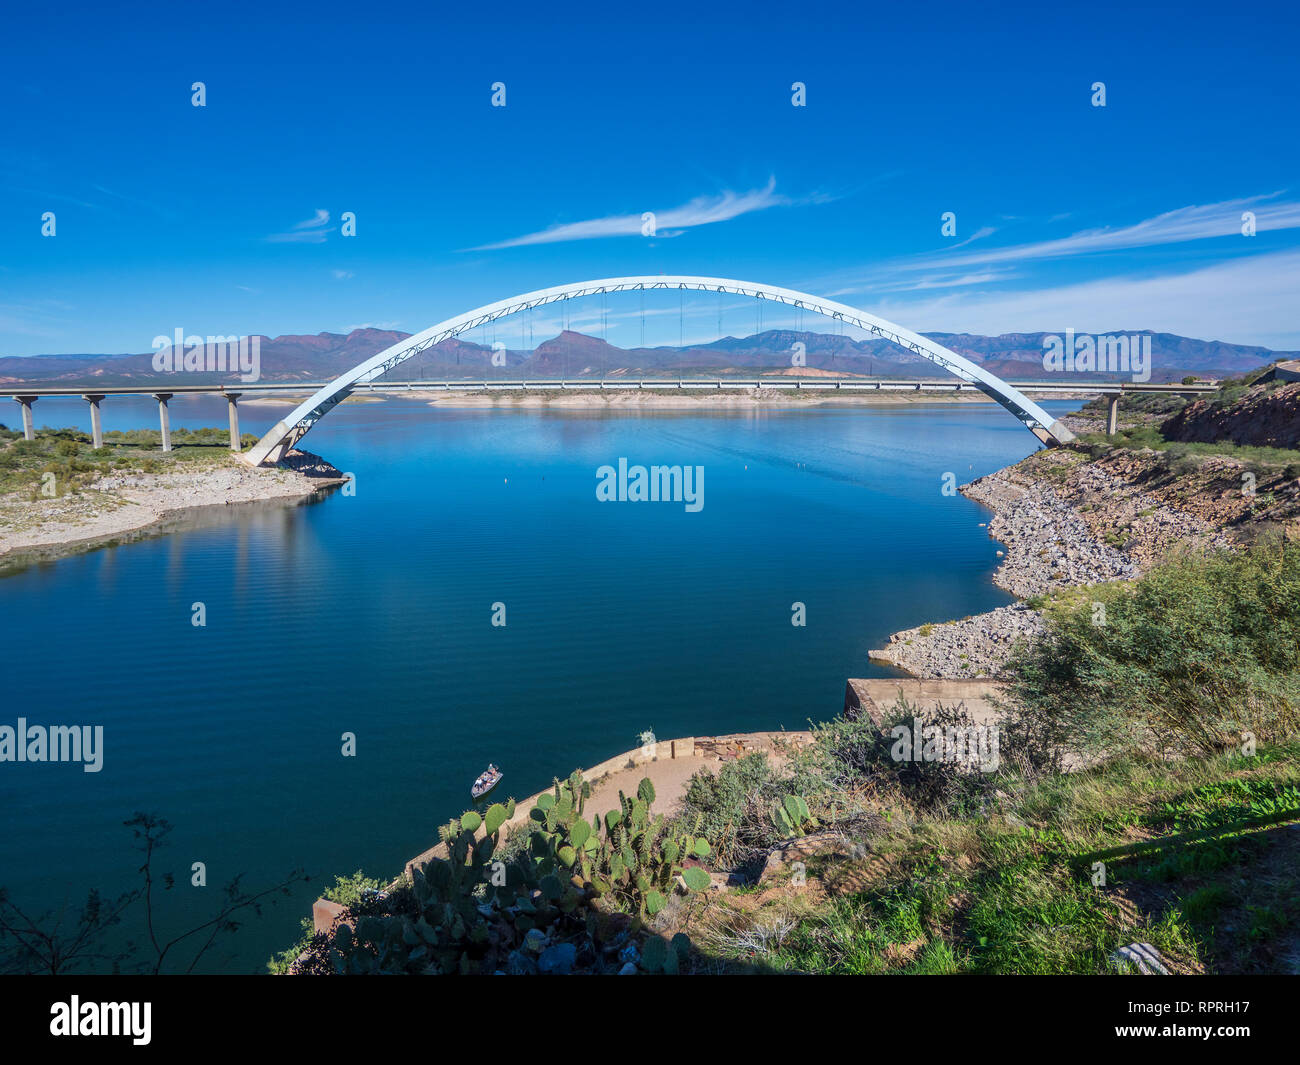 Arch bridge derrière Théodore Roosevelt Dam, Arizona l'autoroute 188 au nord du globe, Arizona. Banque D'Images